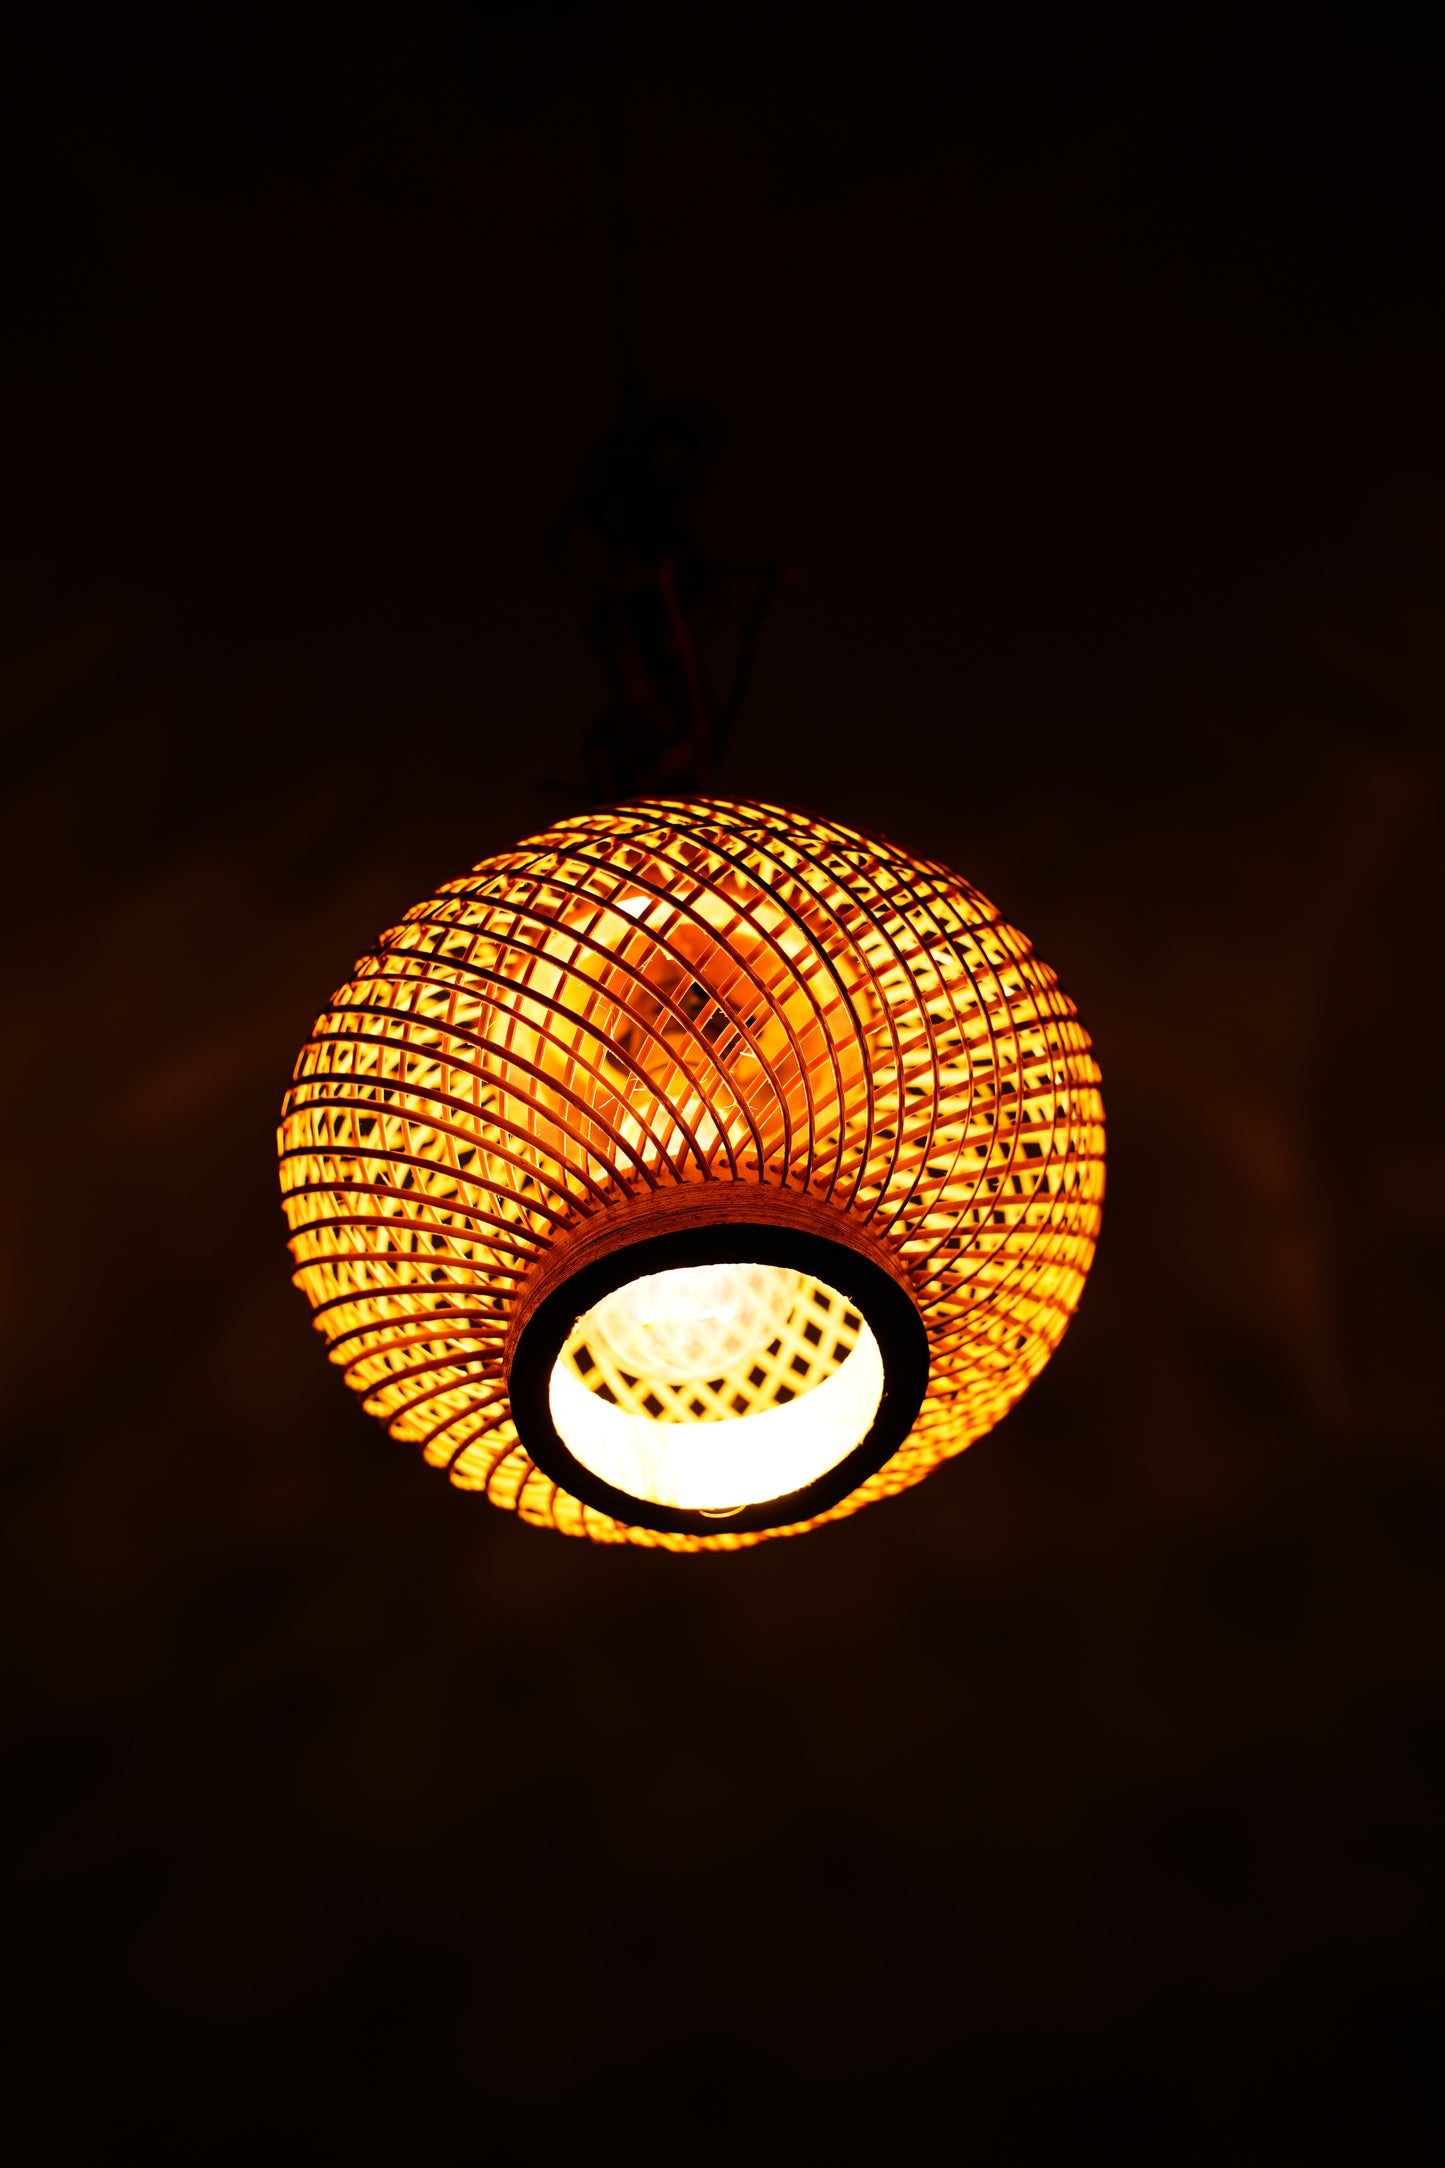 Bamboo Pot Hanging Decor Lamp